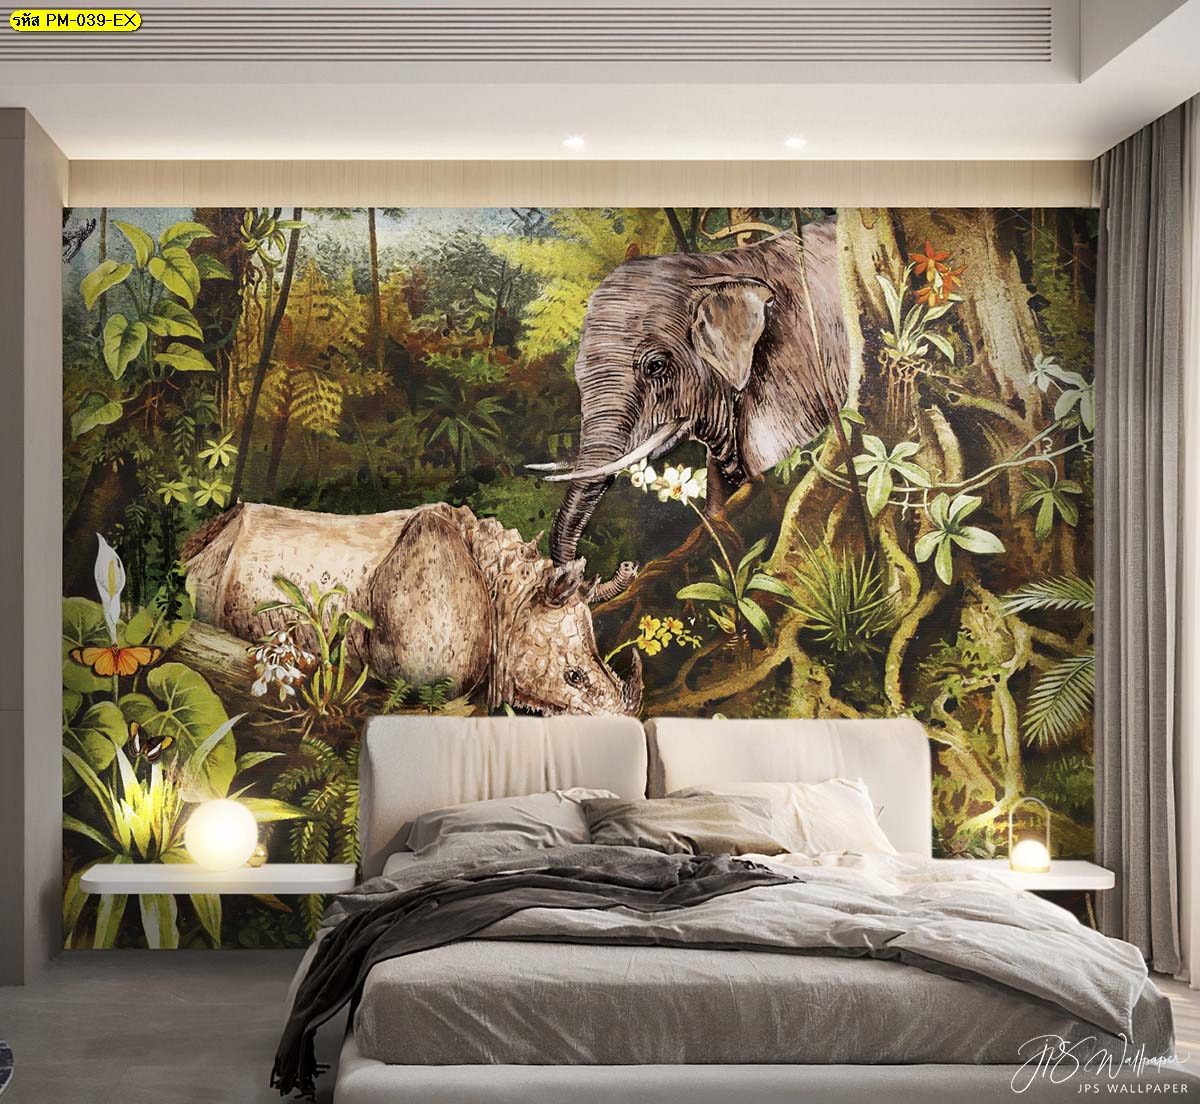 สัมผัสความสดชื่นในห้องนอนด้วยวอลเปเปอร์ลายธรรมชาติ ช้างในป่า สัตว์ใหญ่ในสวนป่า